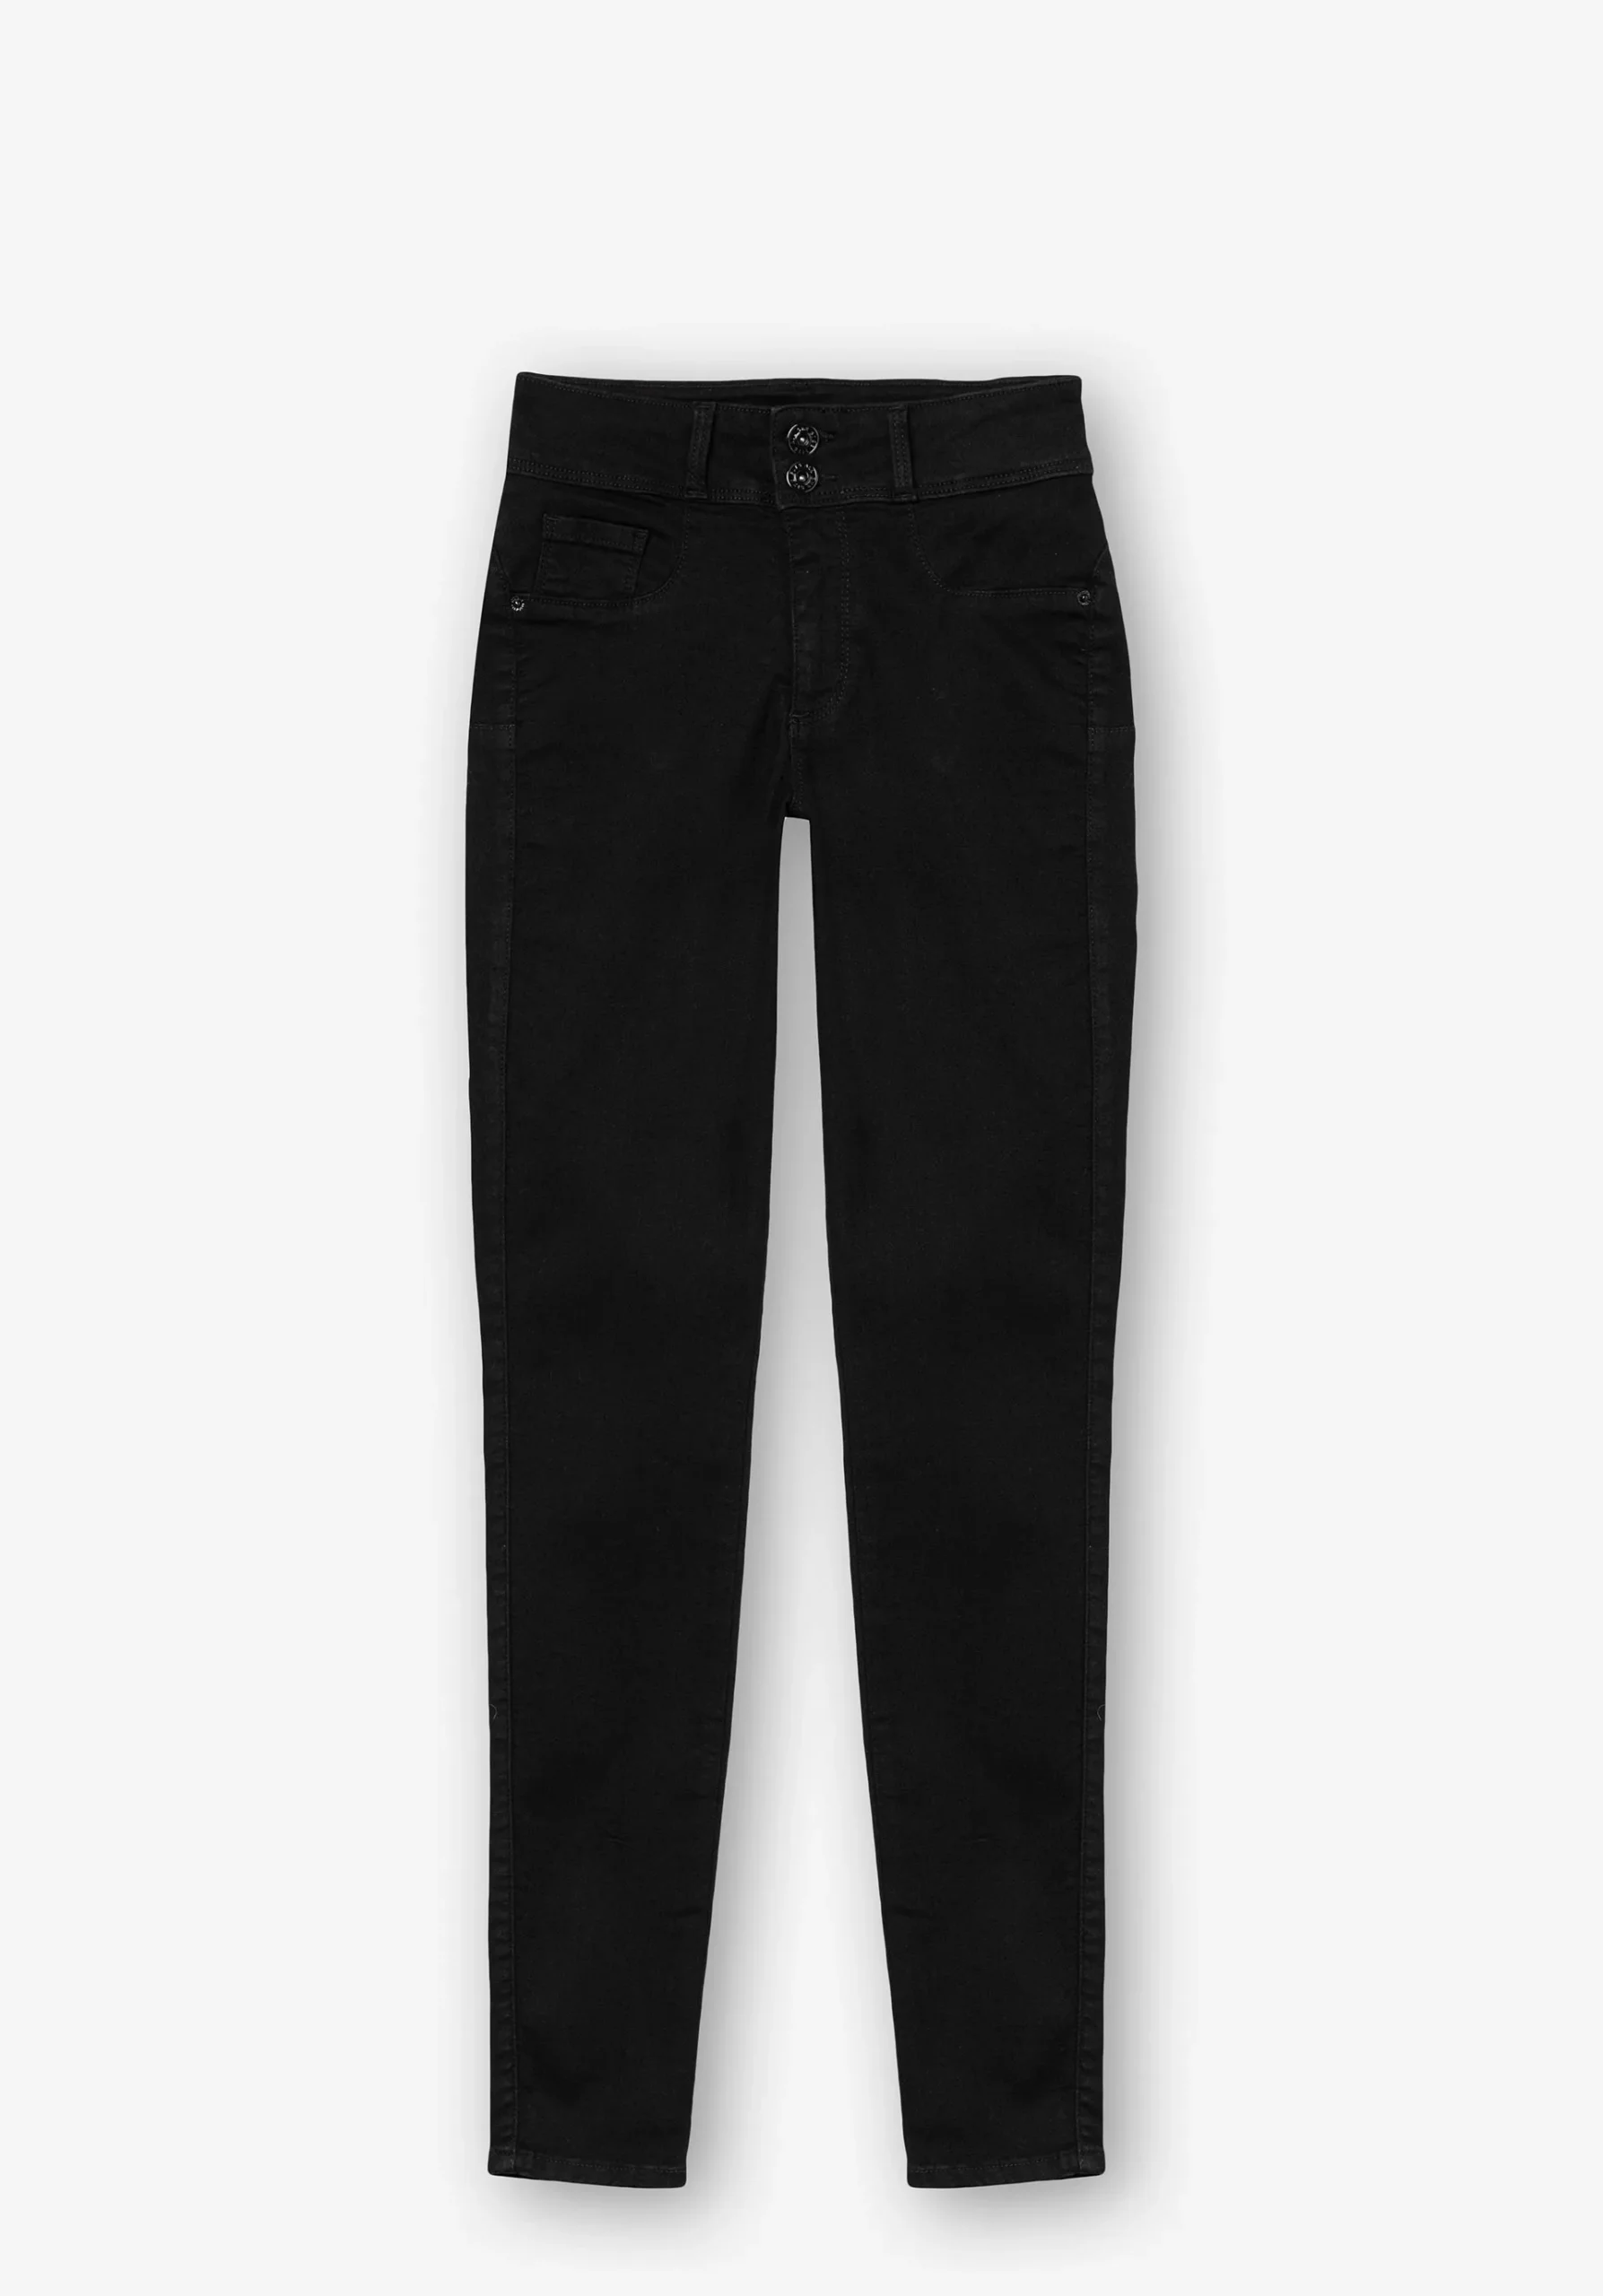 Jeans One Size Skinny Silhouette Tiro Alto Negro